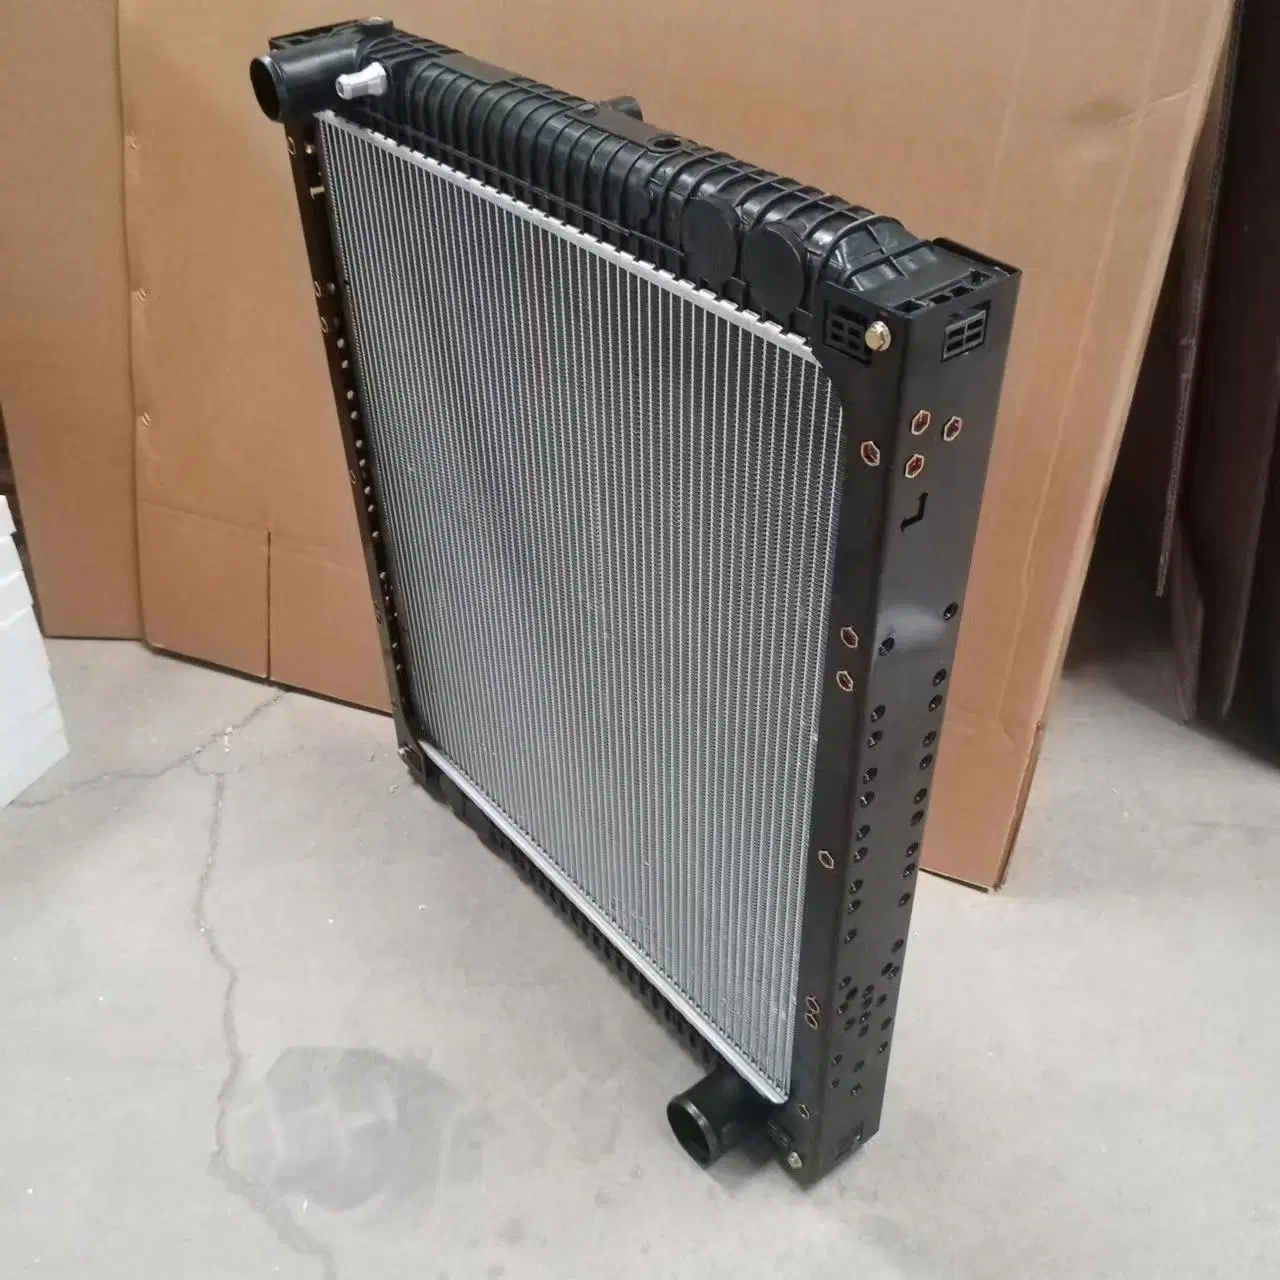 1301010-Kc400 1301010-14b 1301100u8050 radiador para FAW Dongfeng JAC J5 J6 Auman Fotoon radiador de repuesto radiador de camiones 13011600L-Zk012 EE.UU